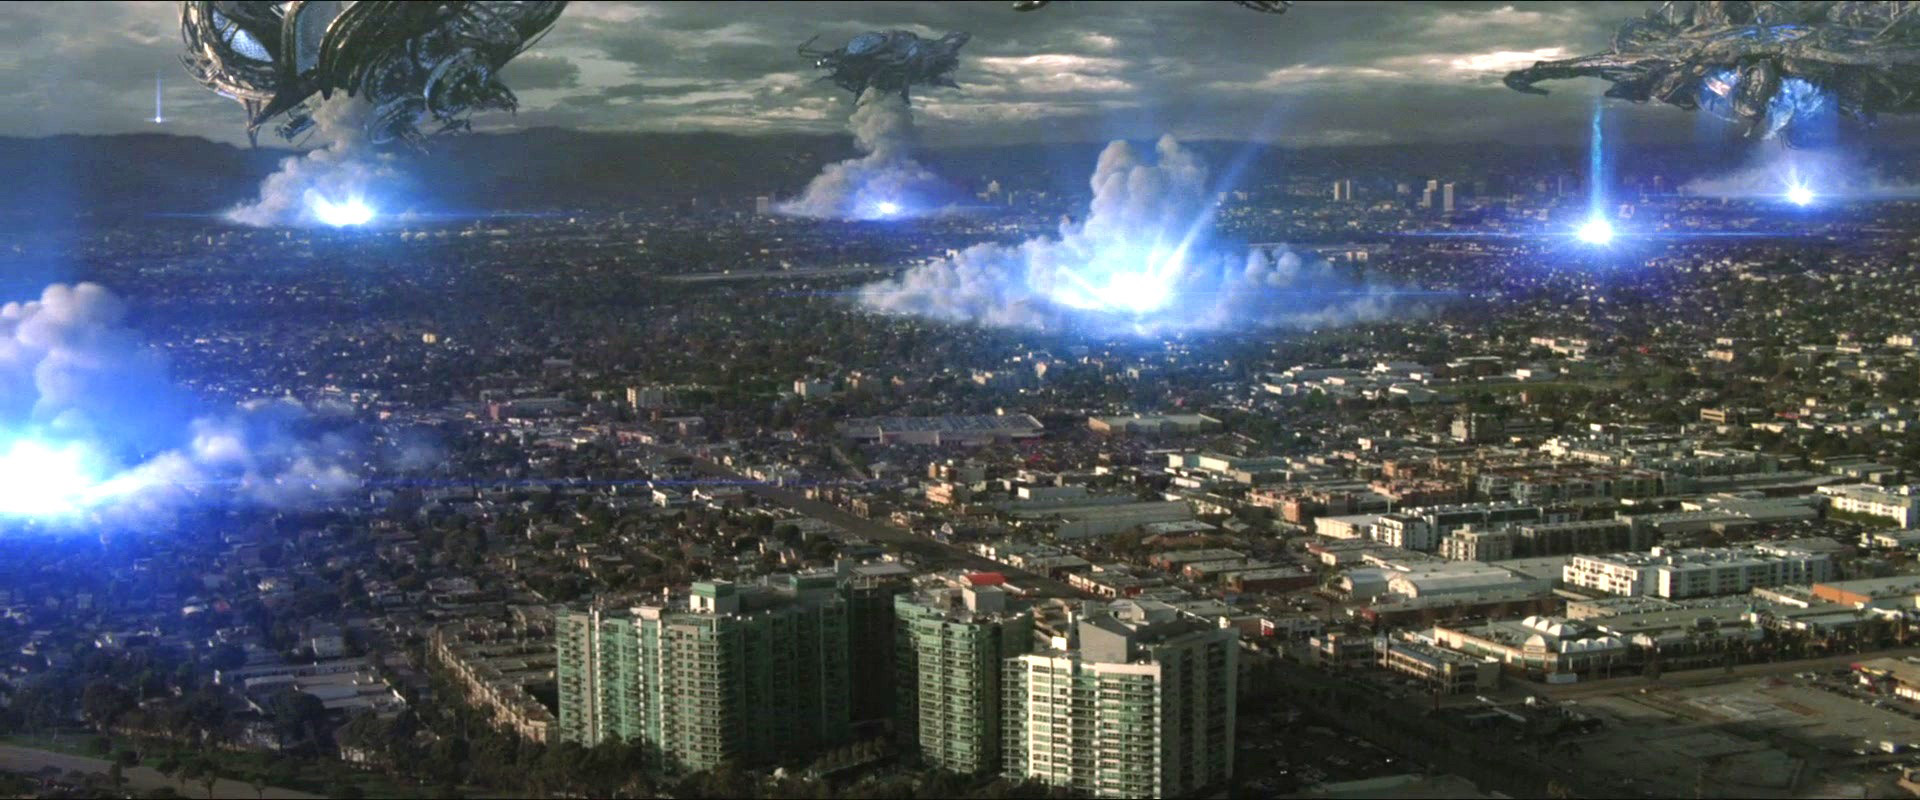 Resultado de imagen para Skyline Invasión aliens